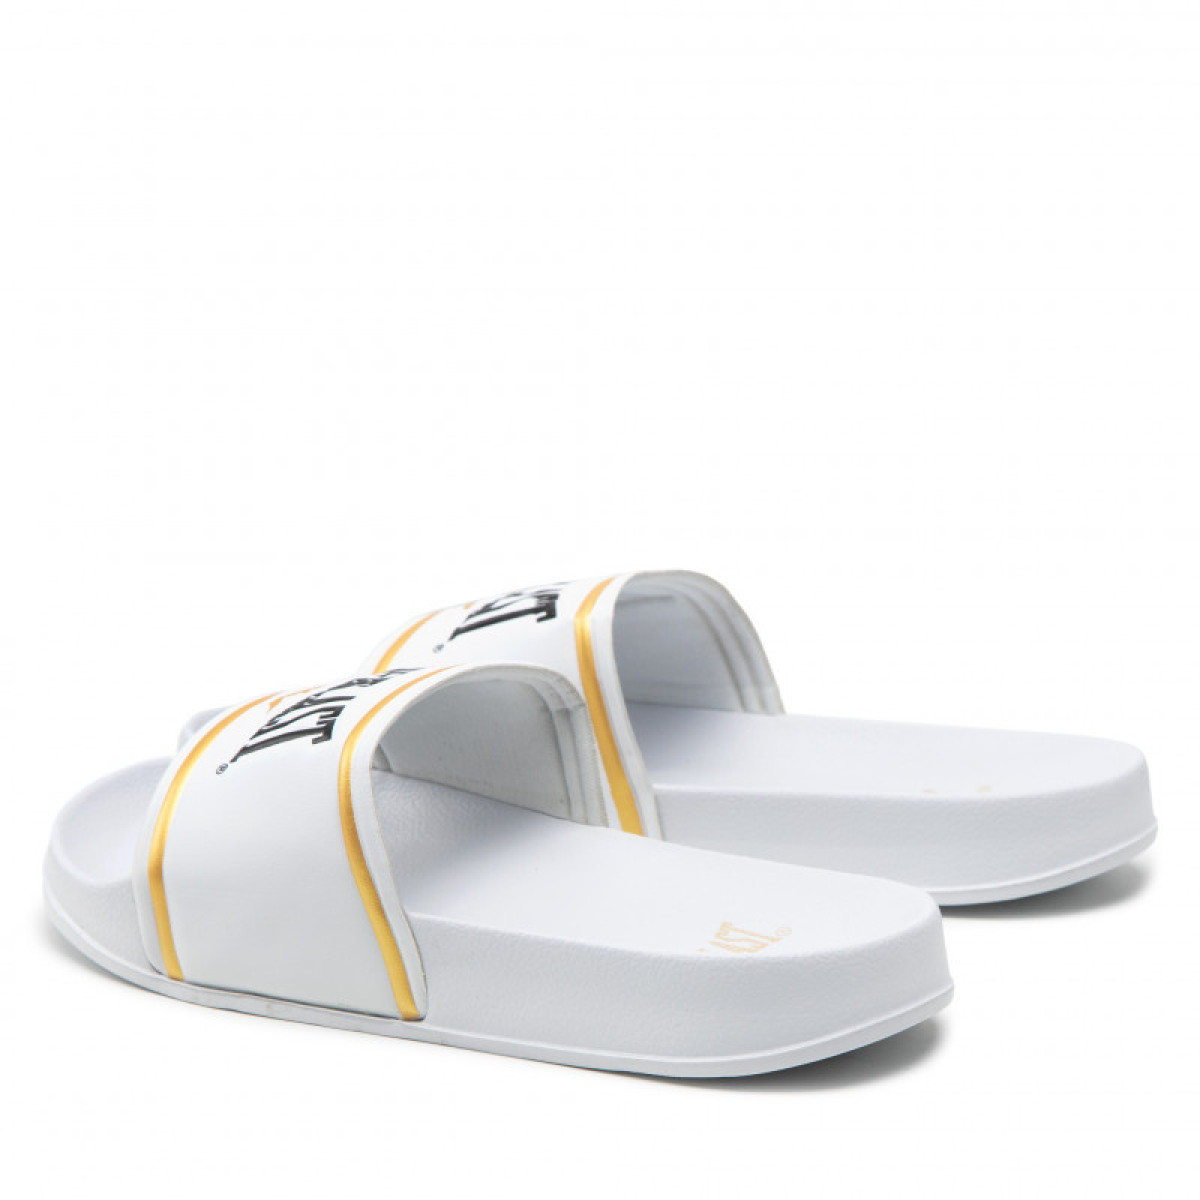 Everlast Side Slippers - White/Gold